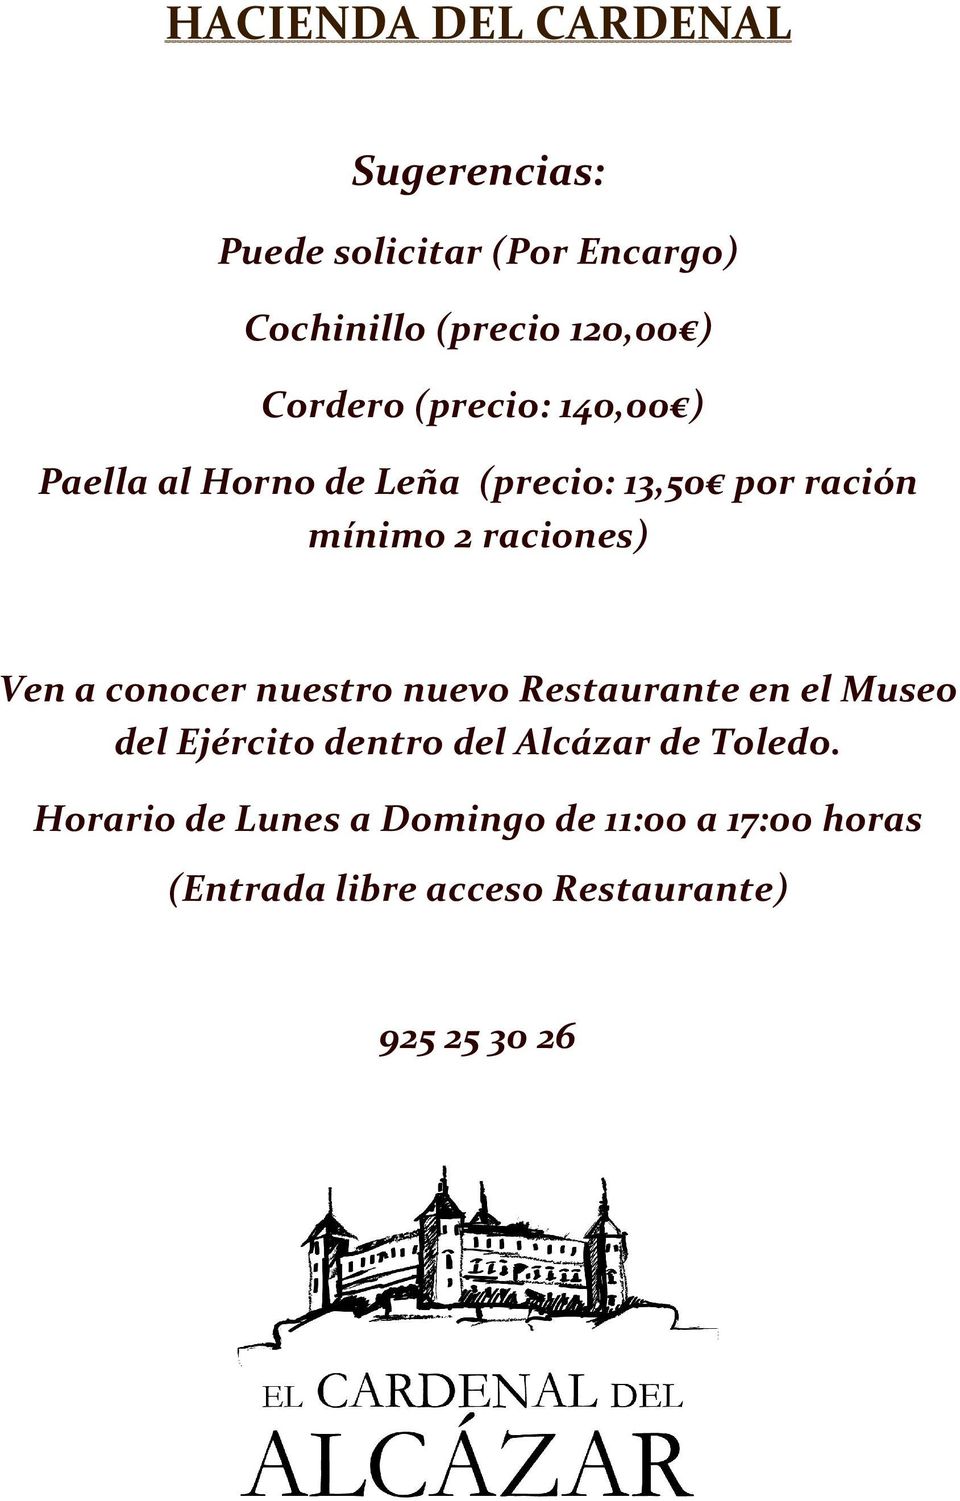 Ven a conocer nuestro nuevo Restaurante en el Museo del Ejército dentro del Alcázar de Toledo.